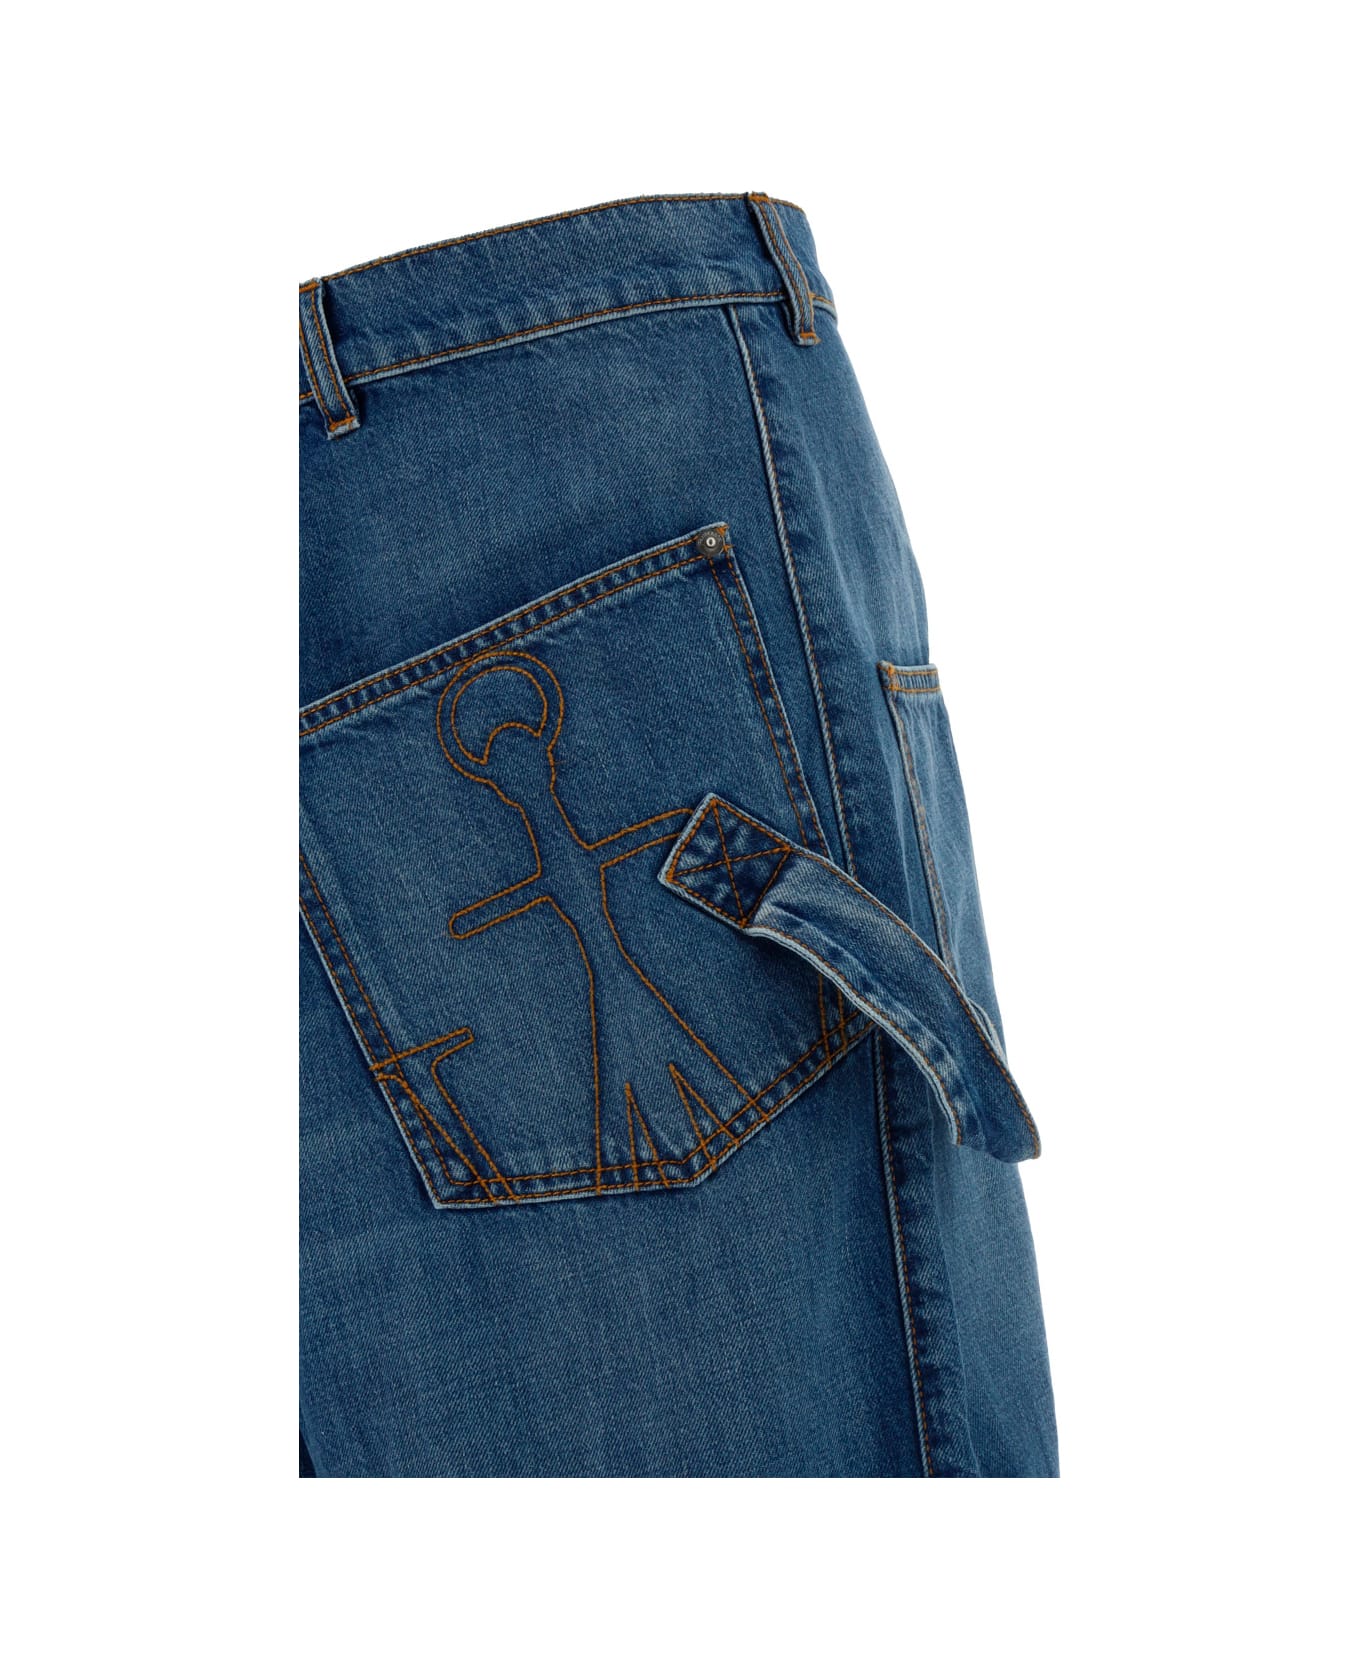 J.W. Anderson Worker Jeans - LIGHT BLUE